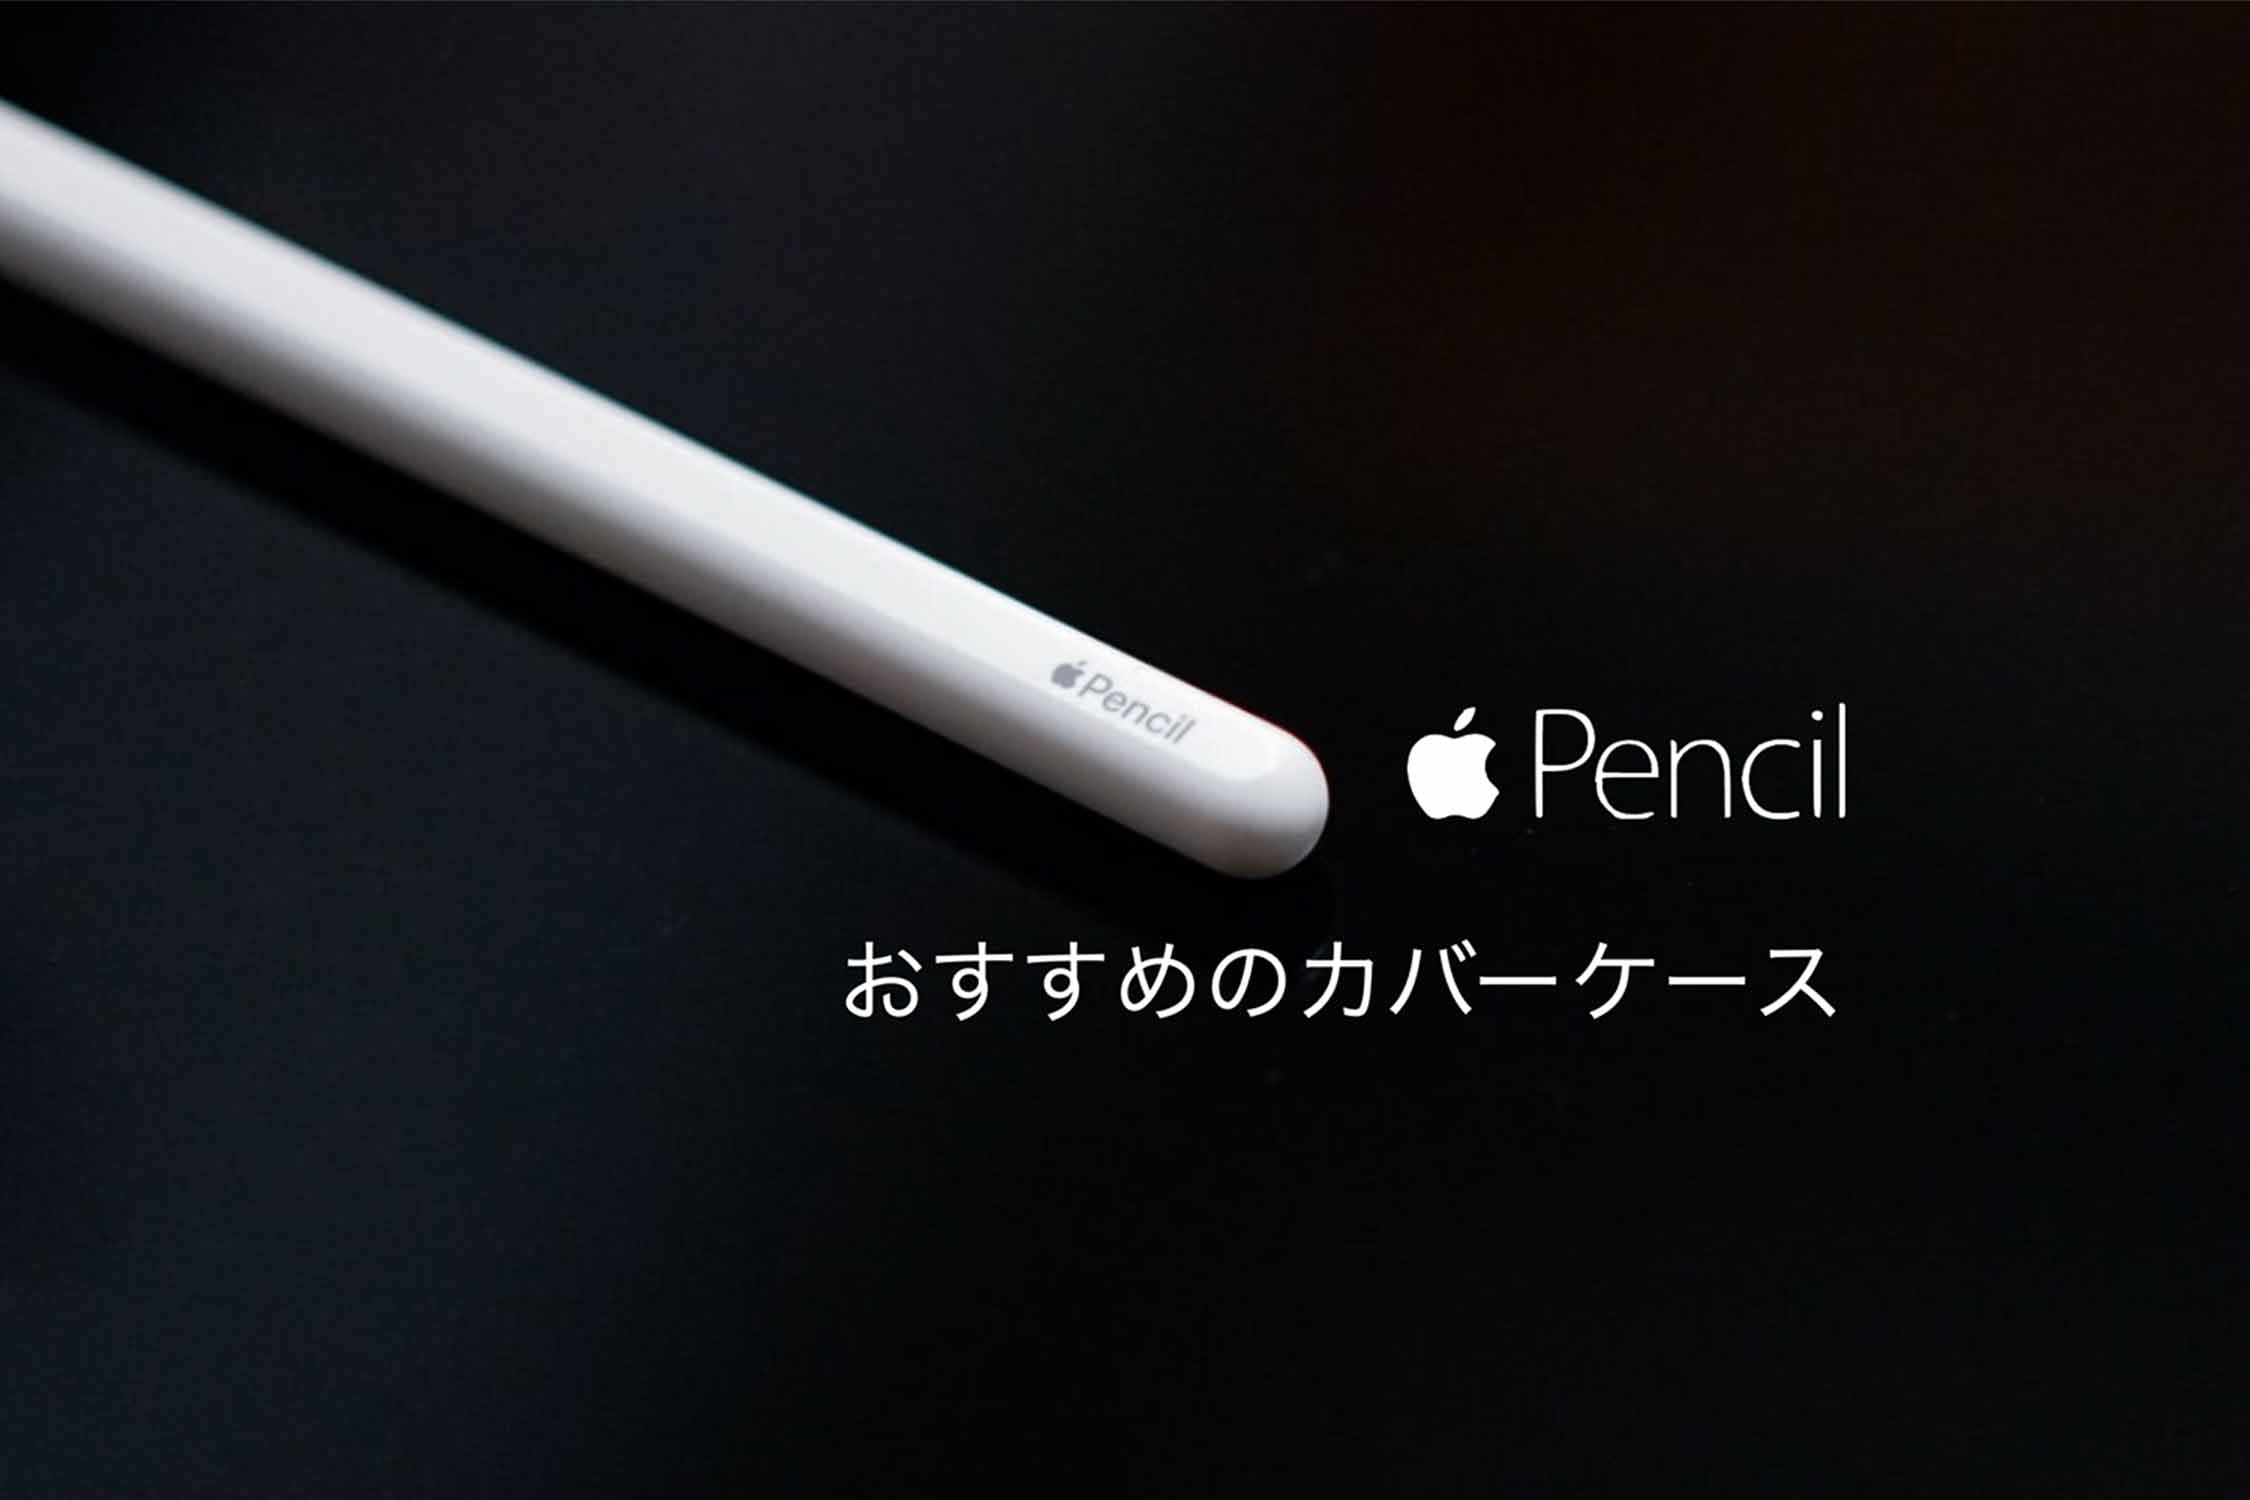 本州送料無料 Apple アップルペンシル 第2世代 pencil その他